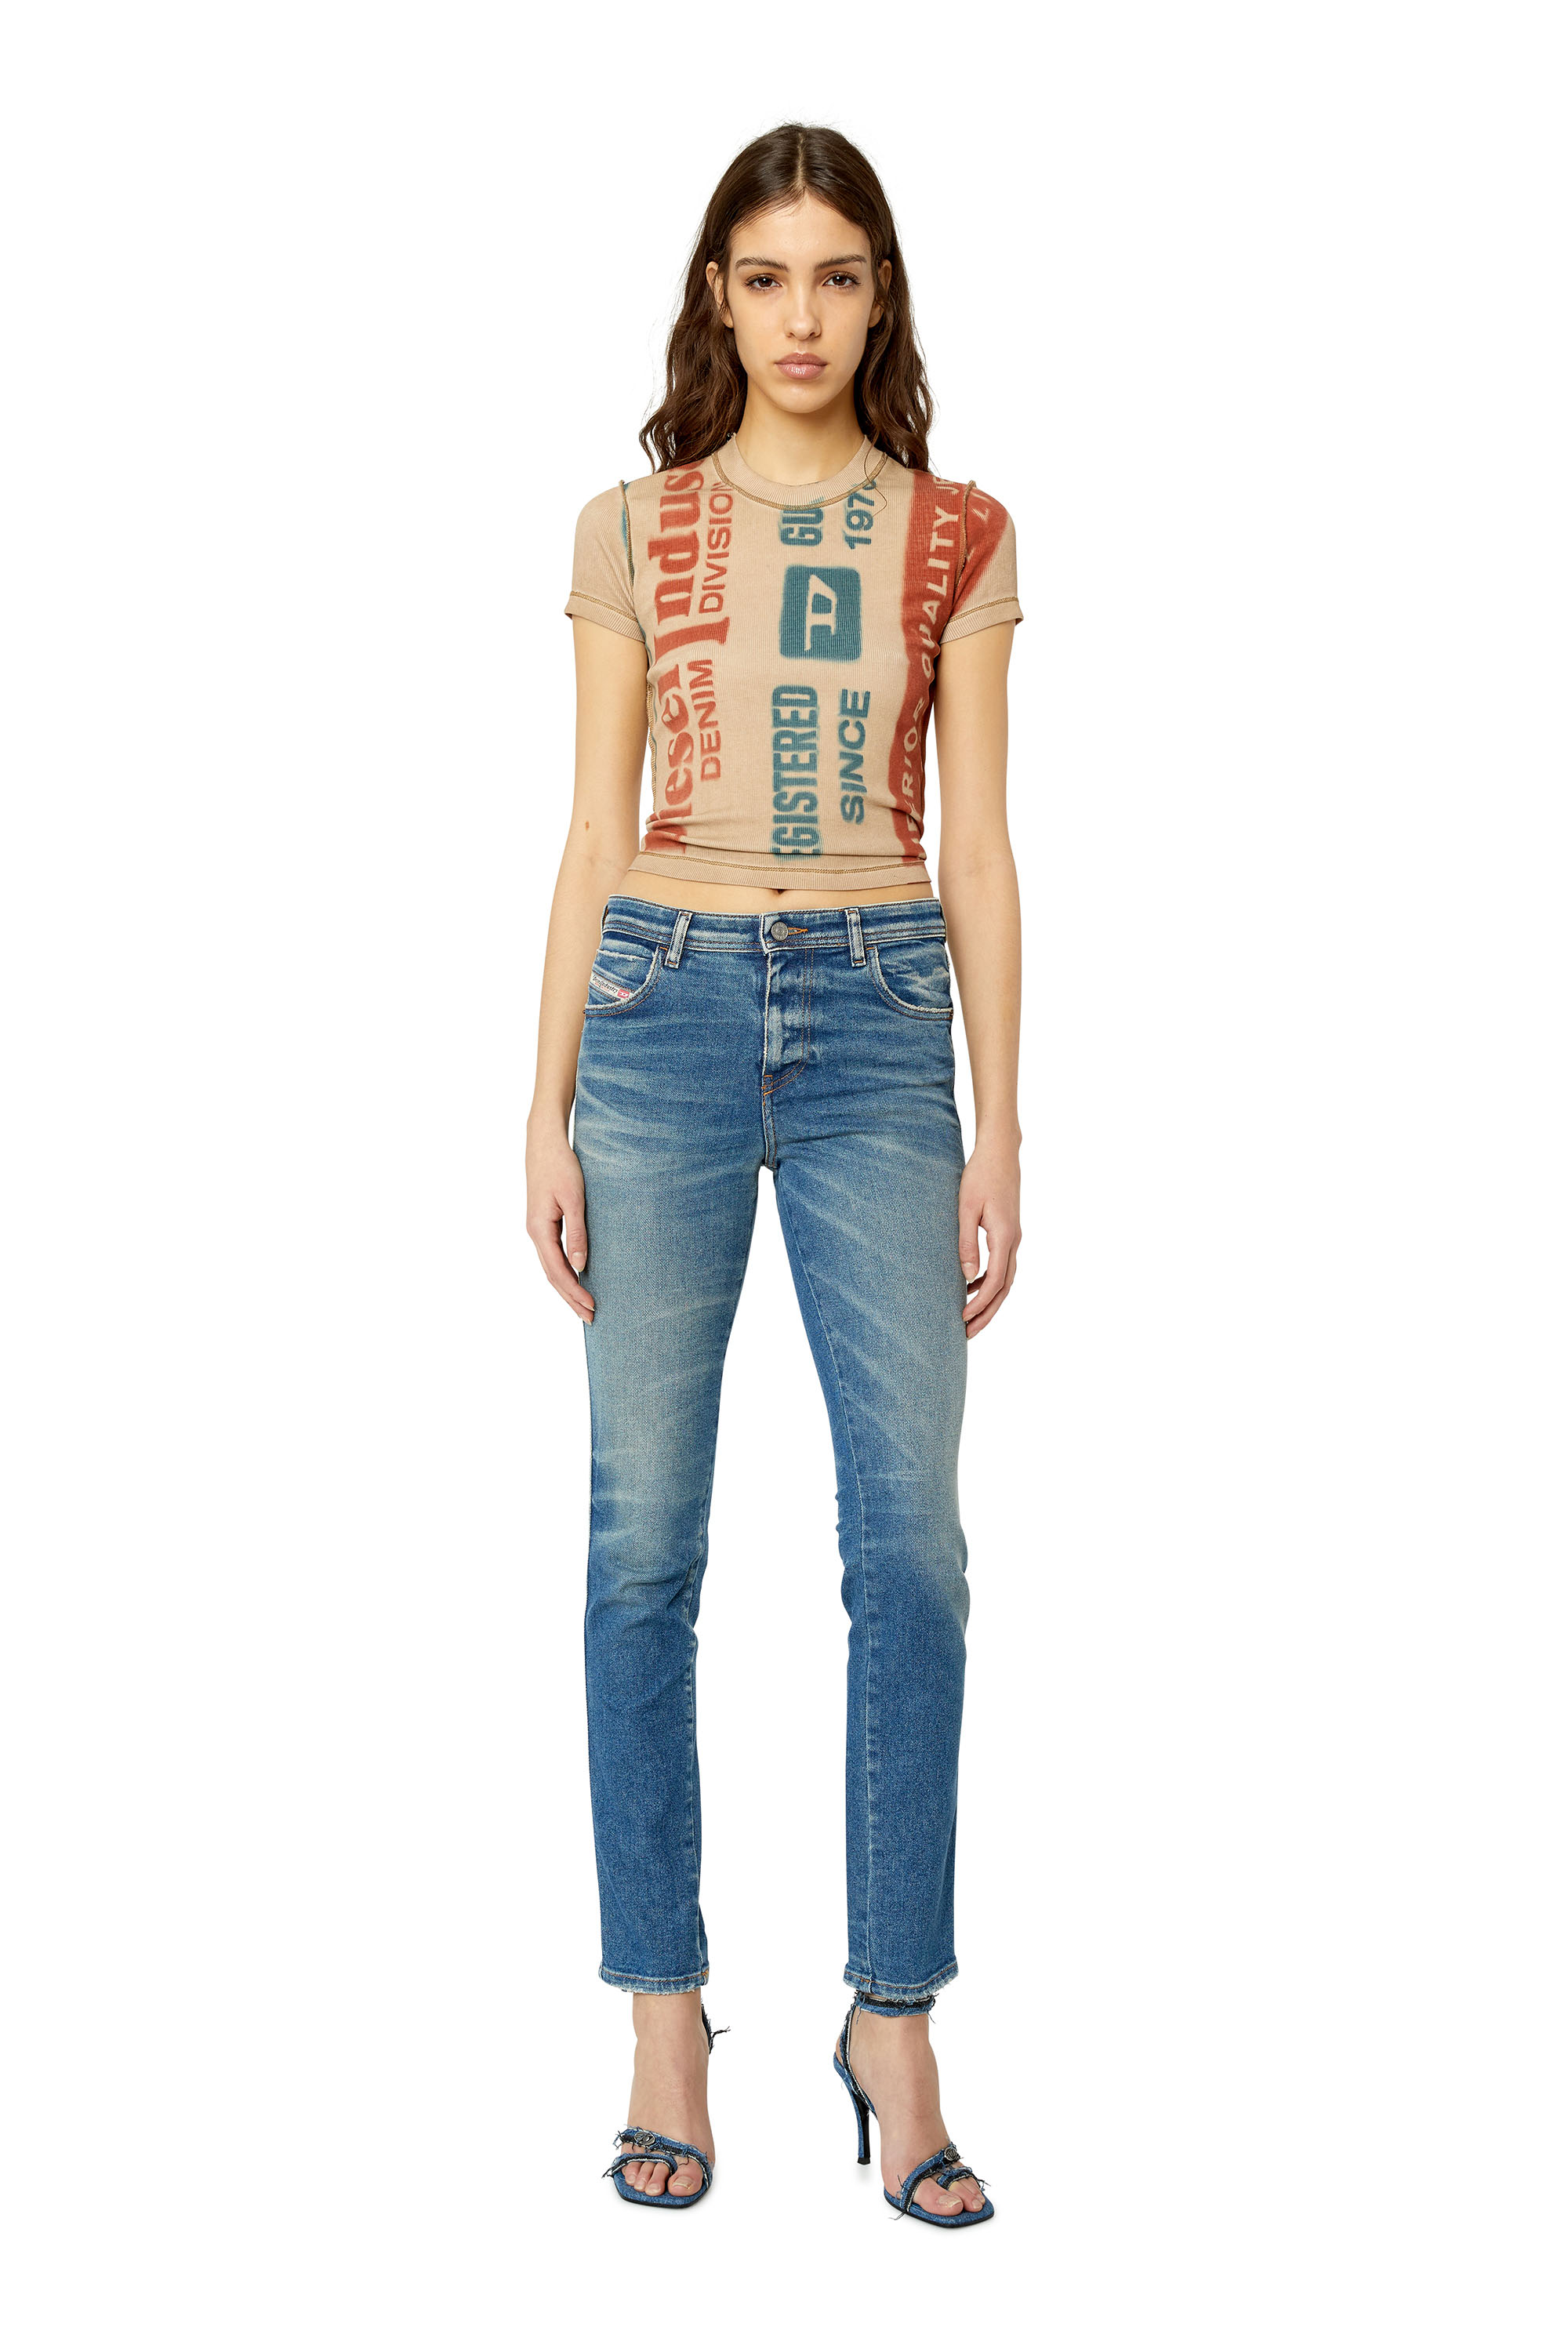 Diesel - Skinny Jeans 2015 Babhila 09E88,  - Image 2